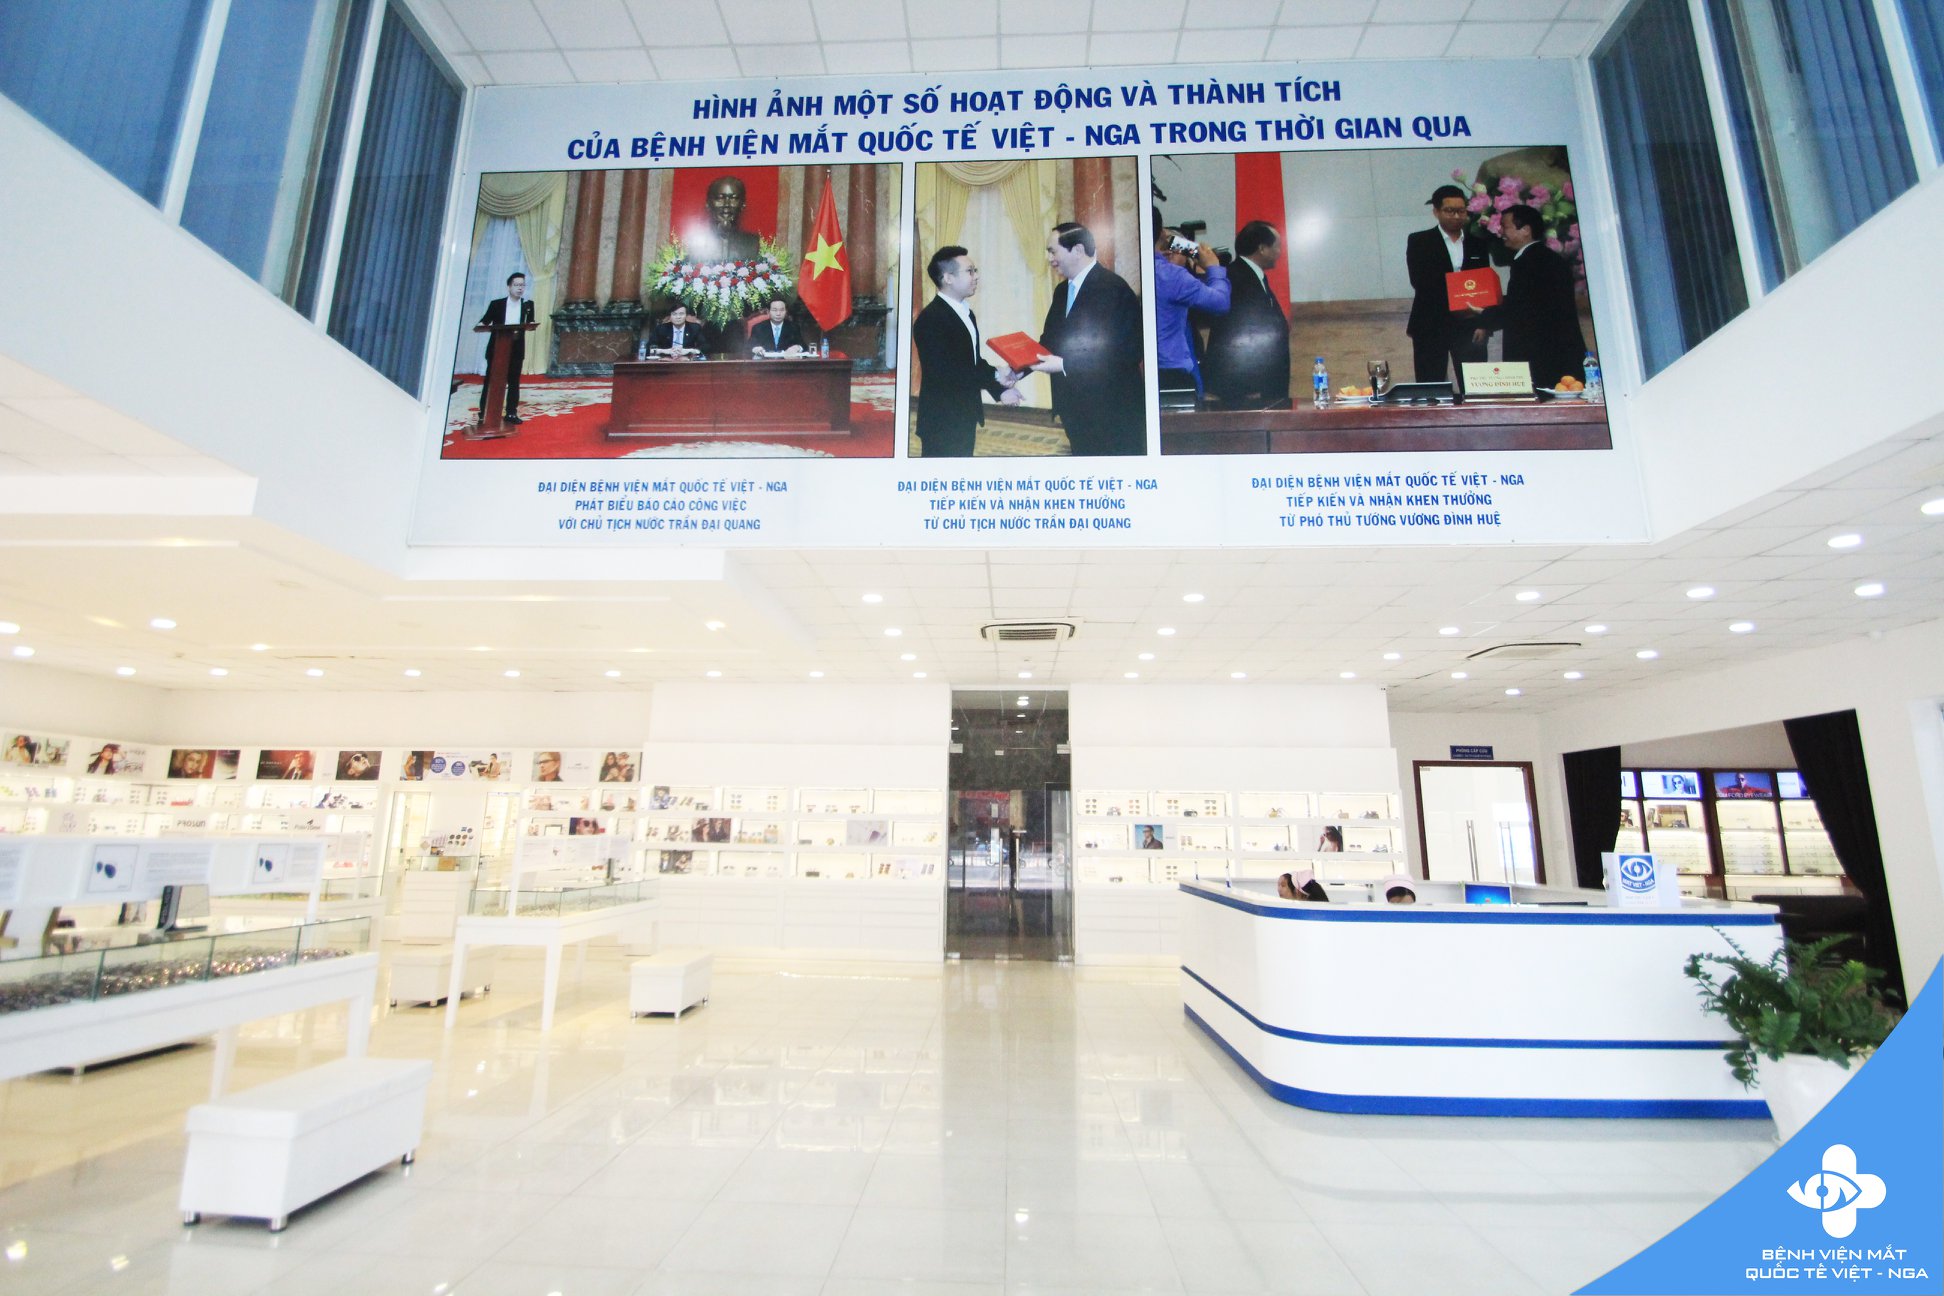 Bệnh Viện Mắt Quốc Tế Việt - Nga ảnh 2